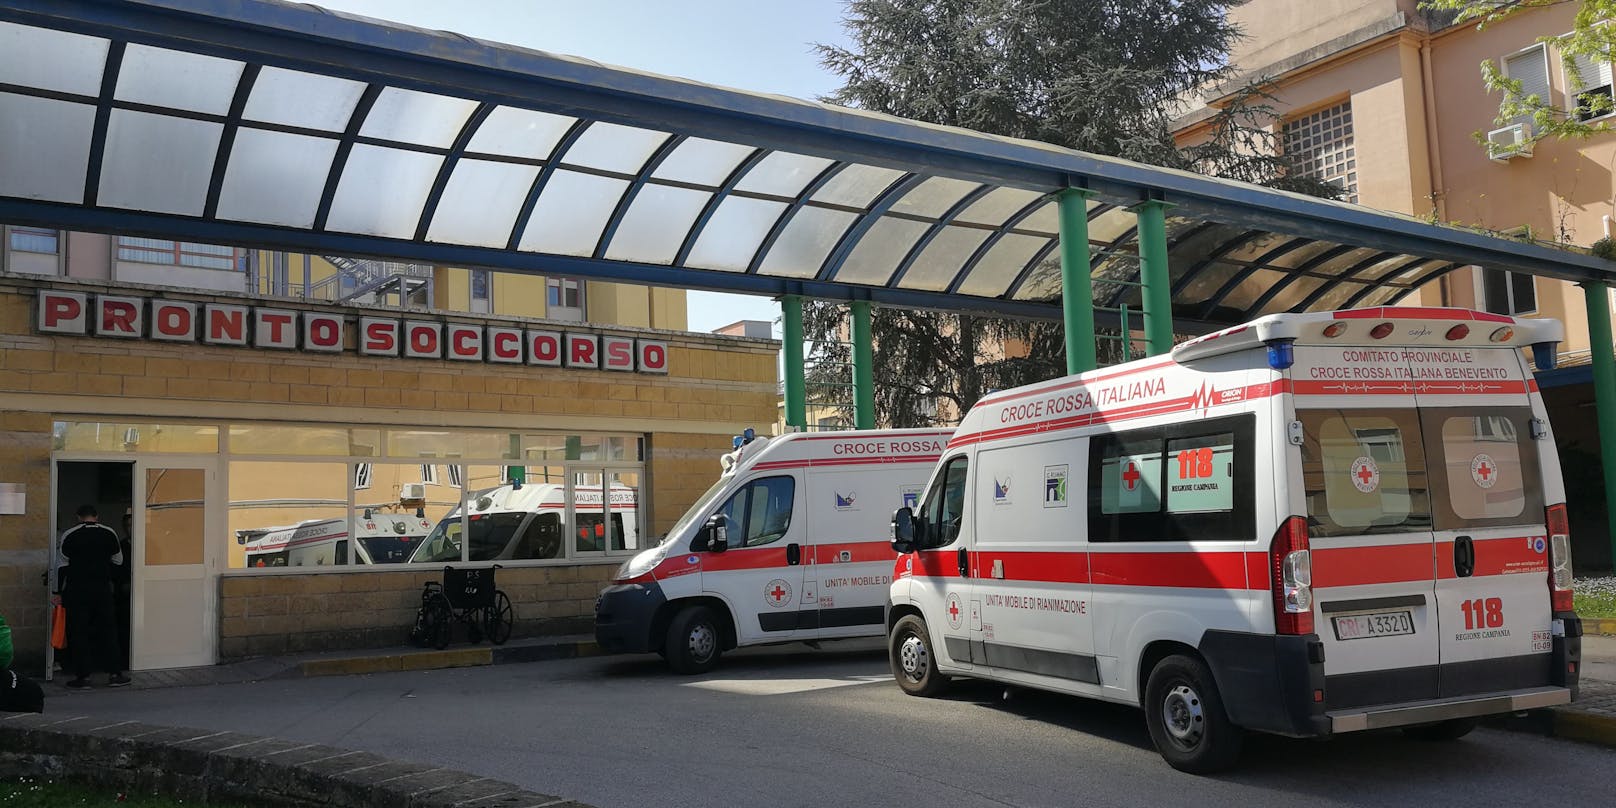 Im Bild: Notaufnahme eines Krankenhauses in Italien. (Symbolbild)&nbsp;